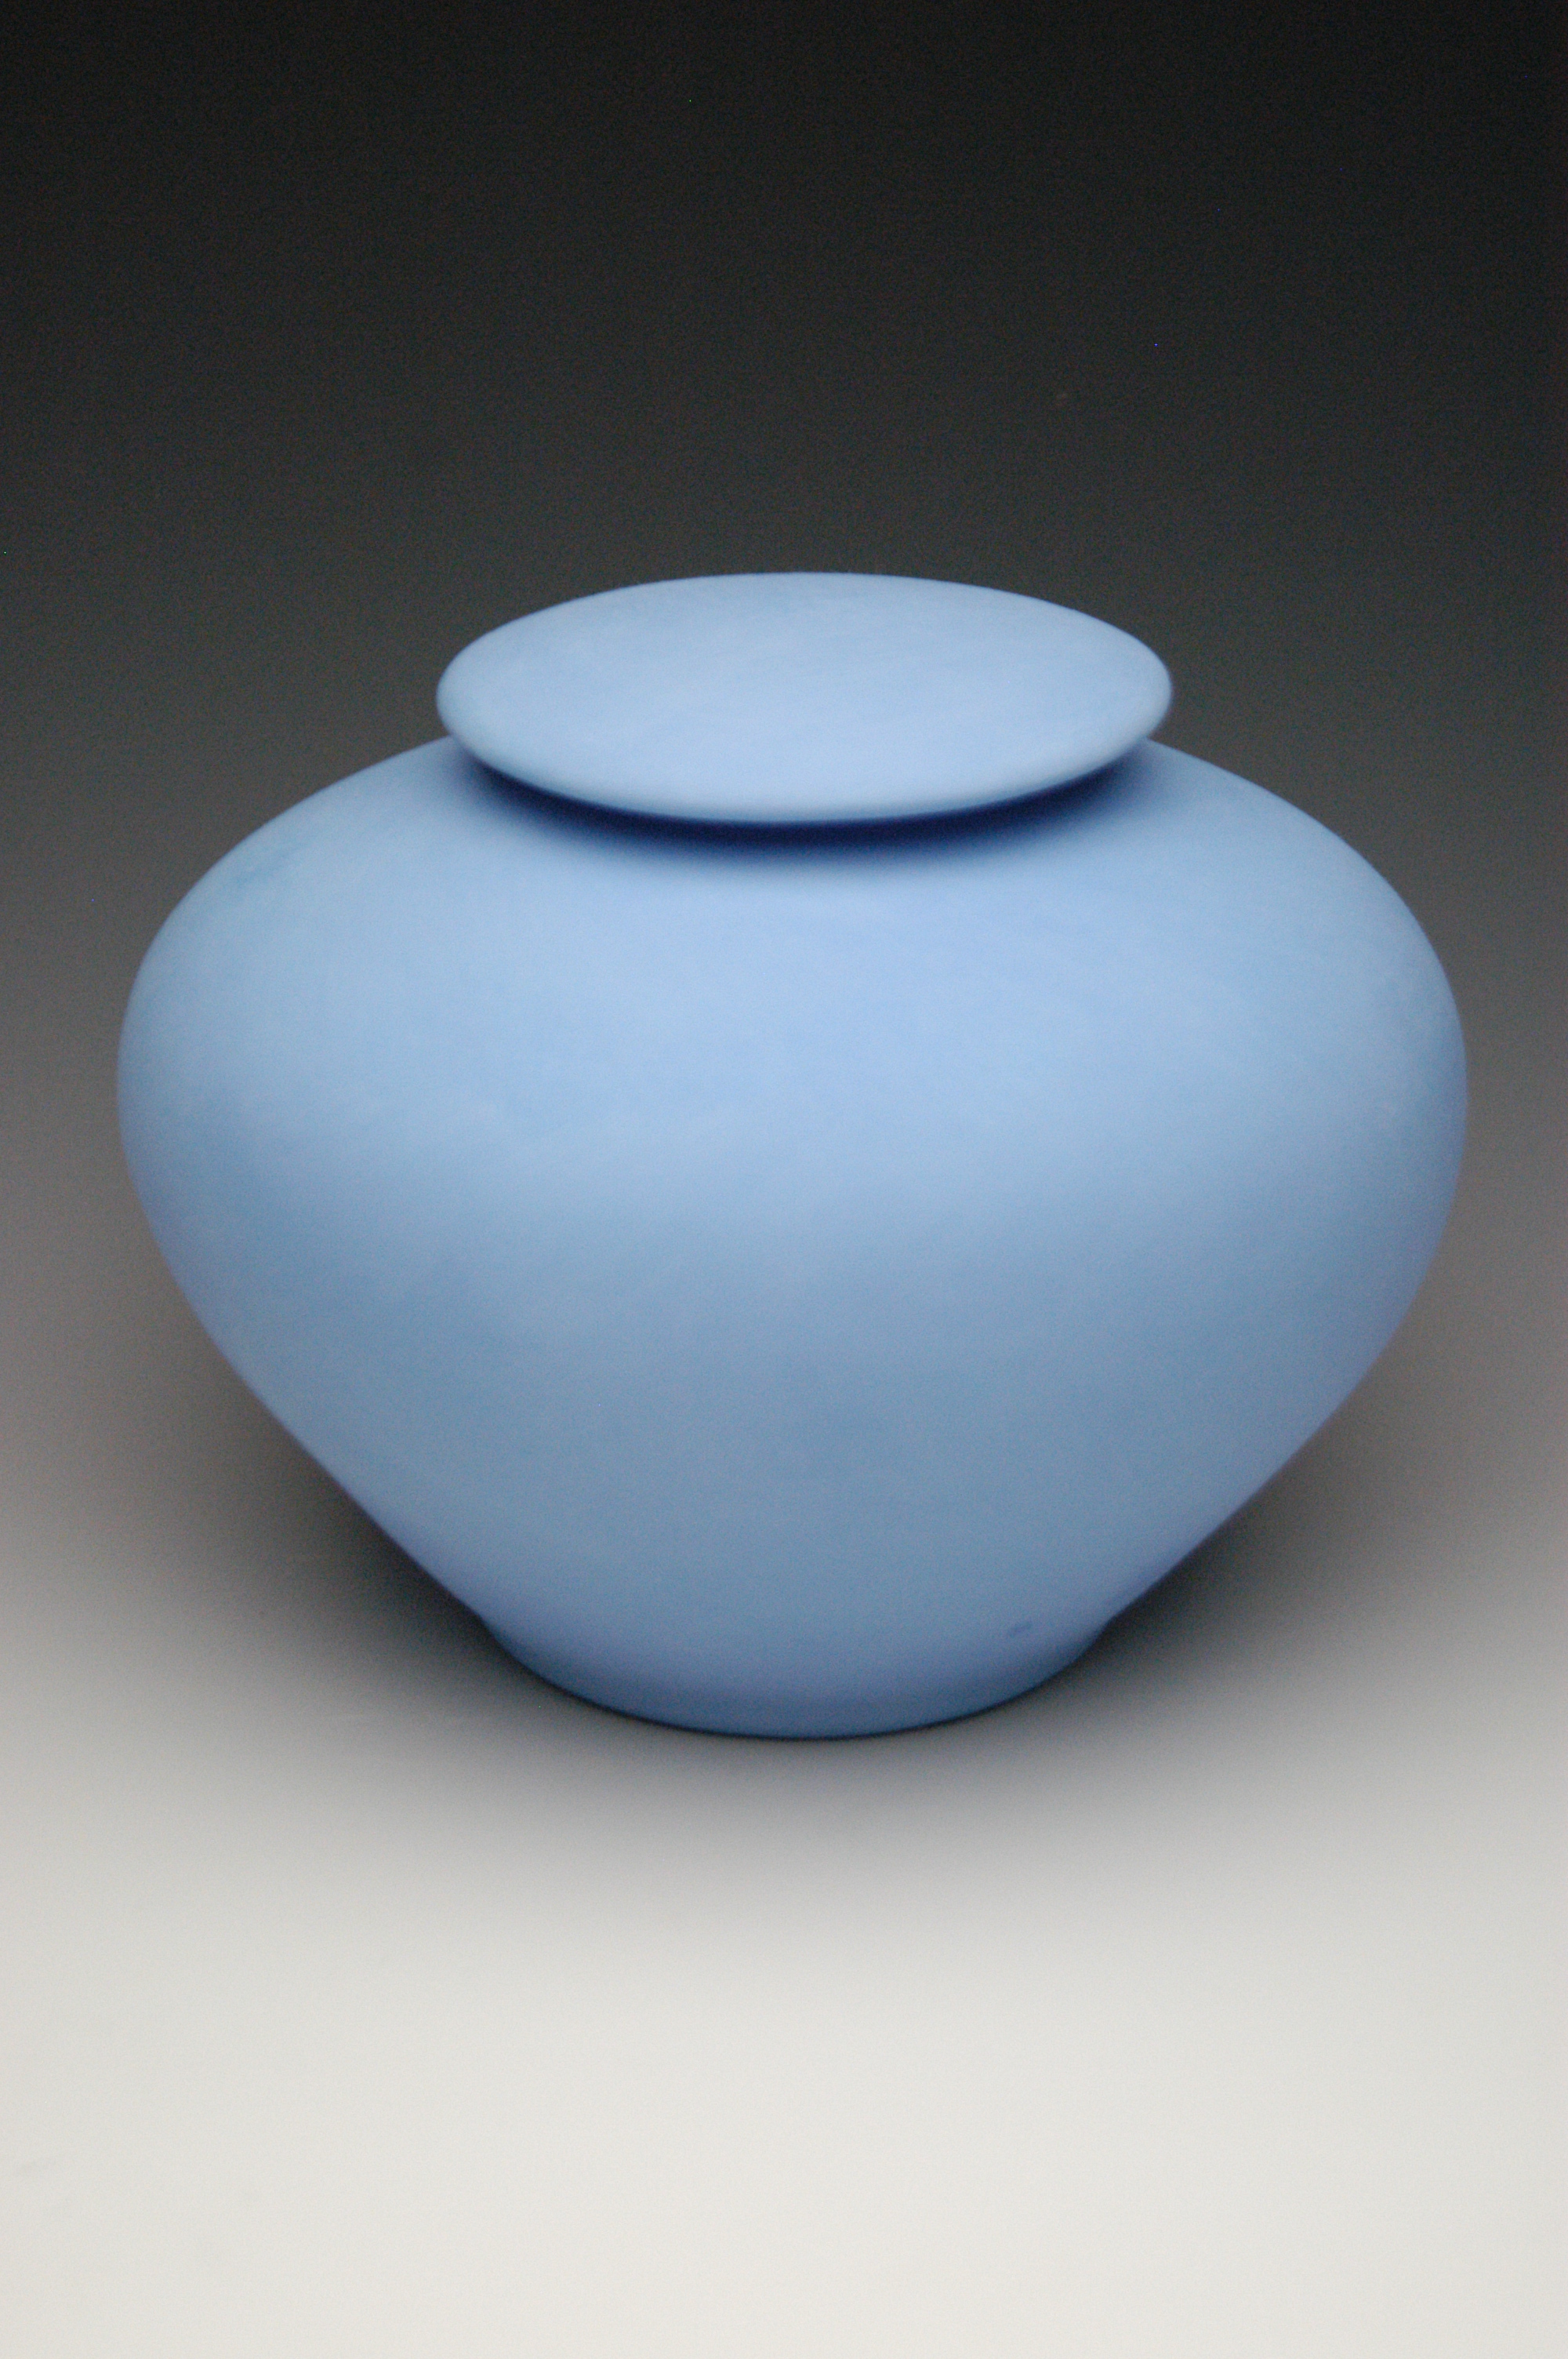 Pastel blue biodegadable cremation urn